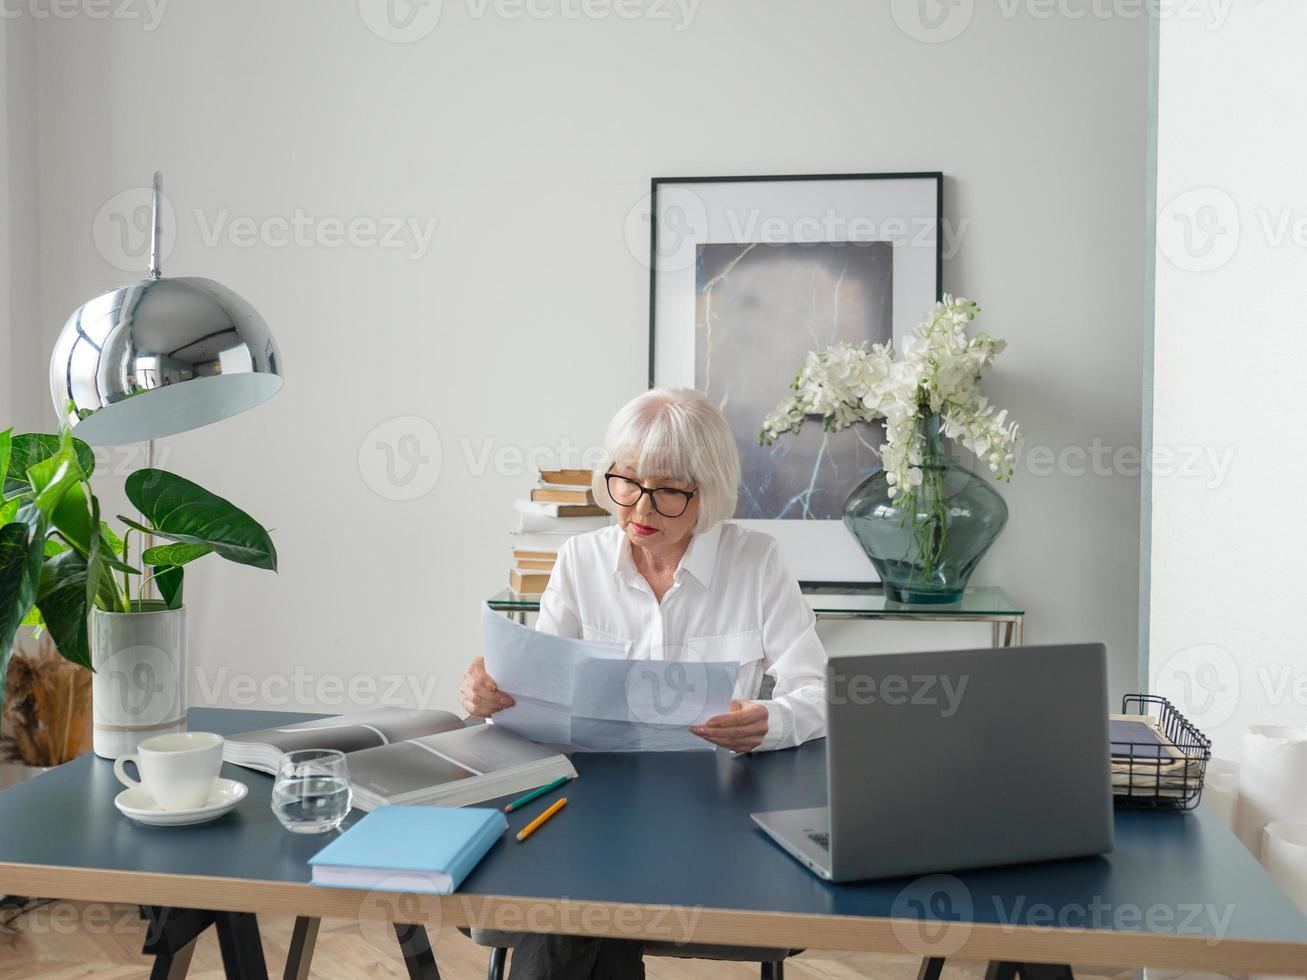 Mujer de cabello gris hermosa senior cansada en blusa blanca leyendo documentos en la oficina. trabajo, personas mayores, problemas, encontrar una solución, concepto de experiencia foto